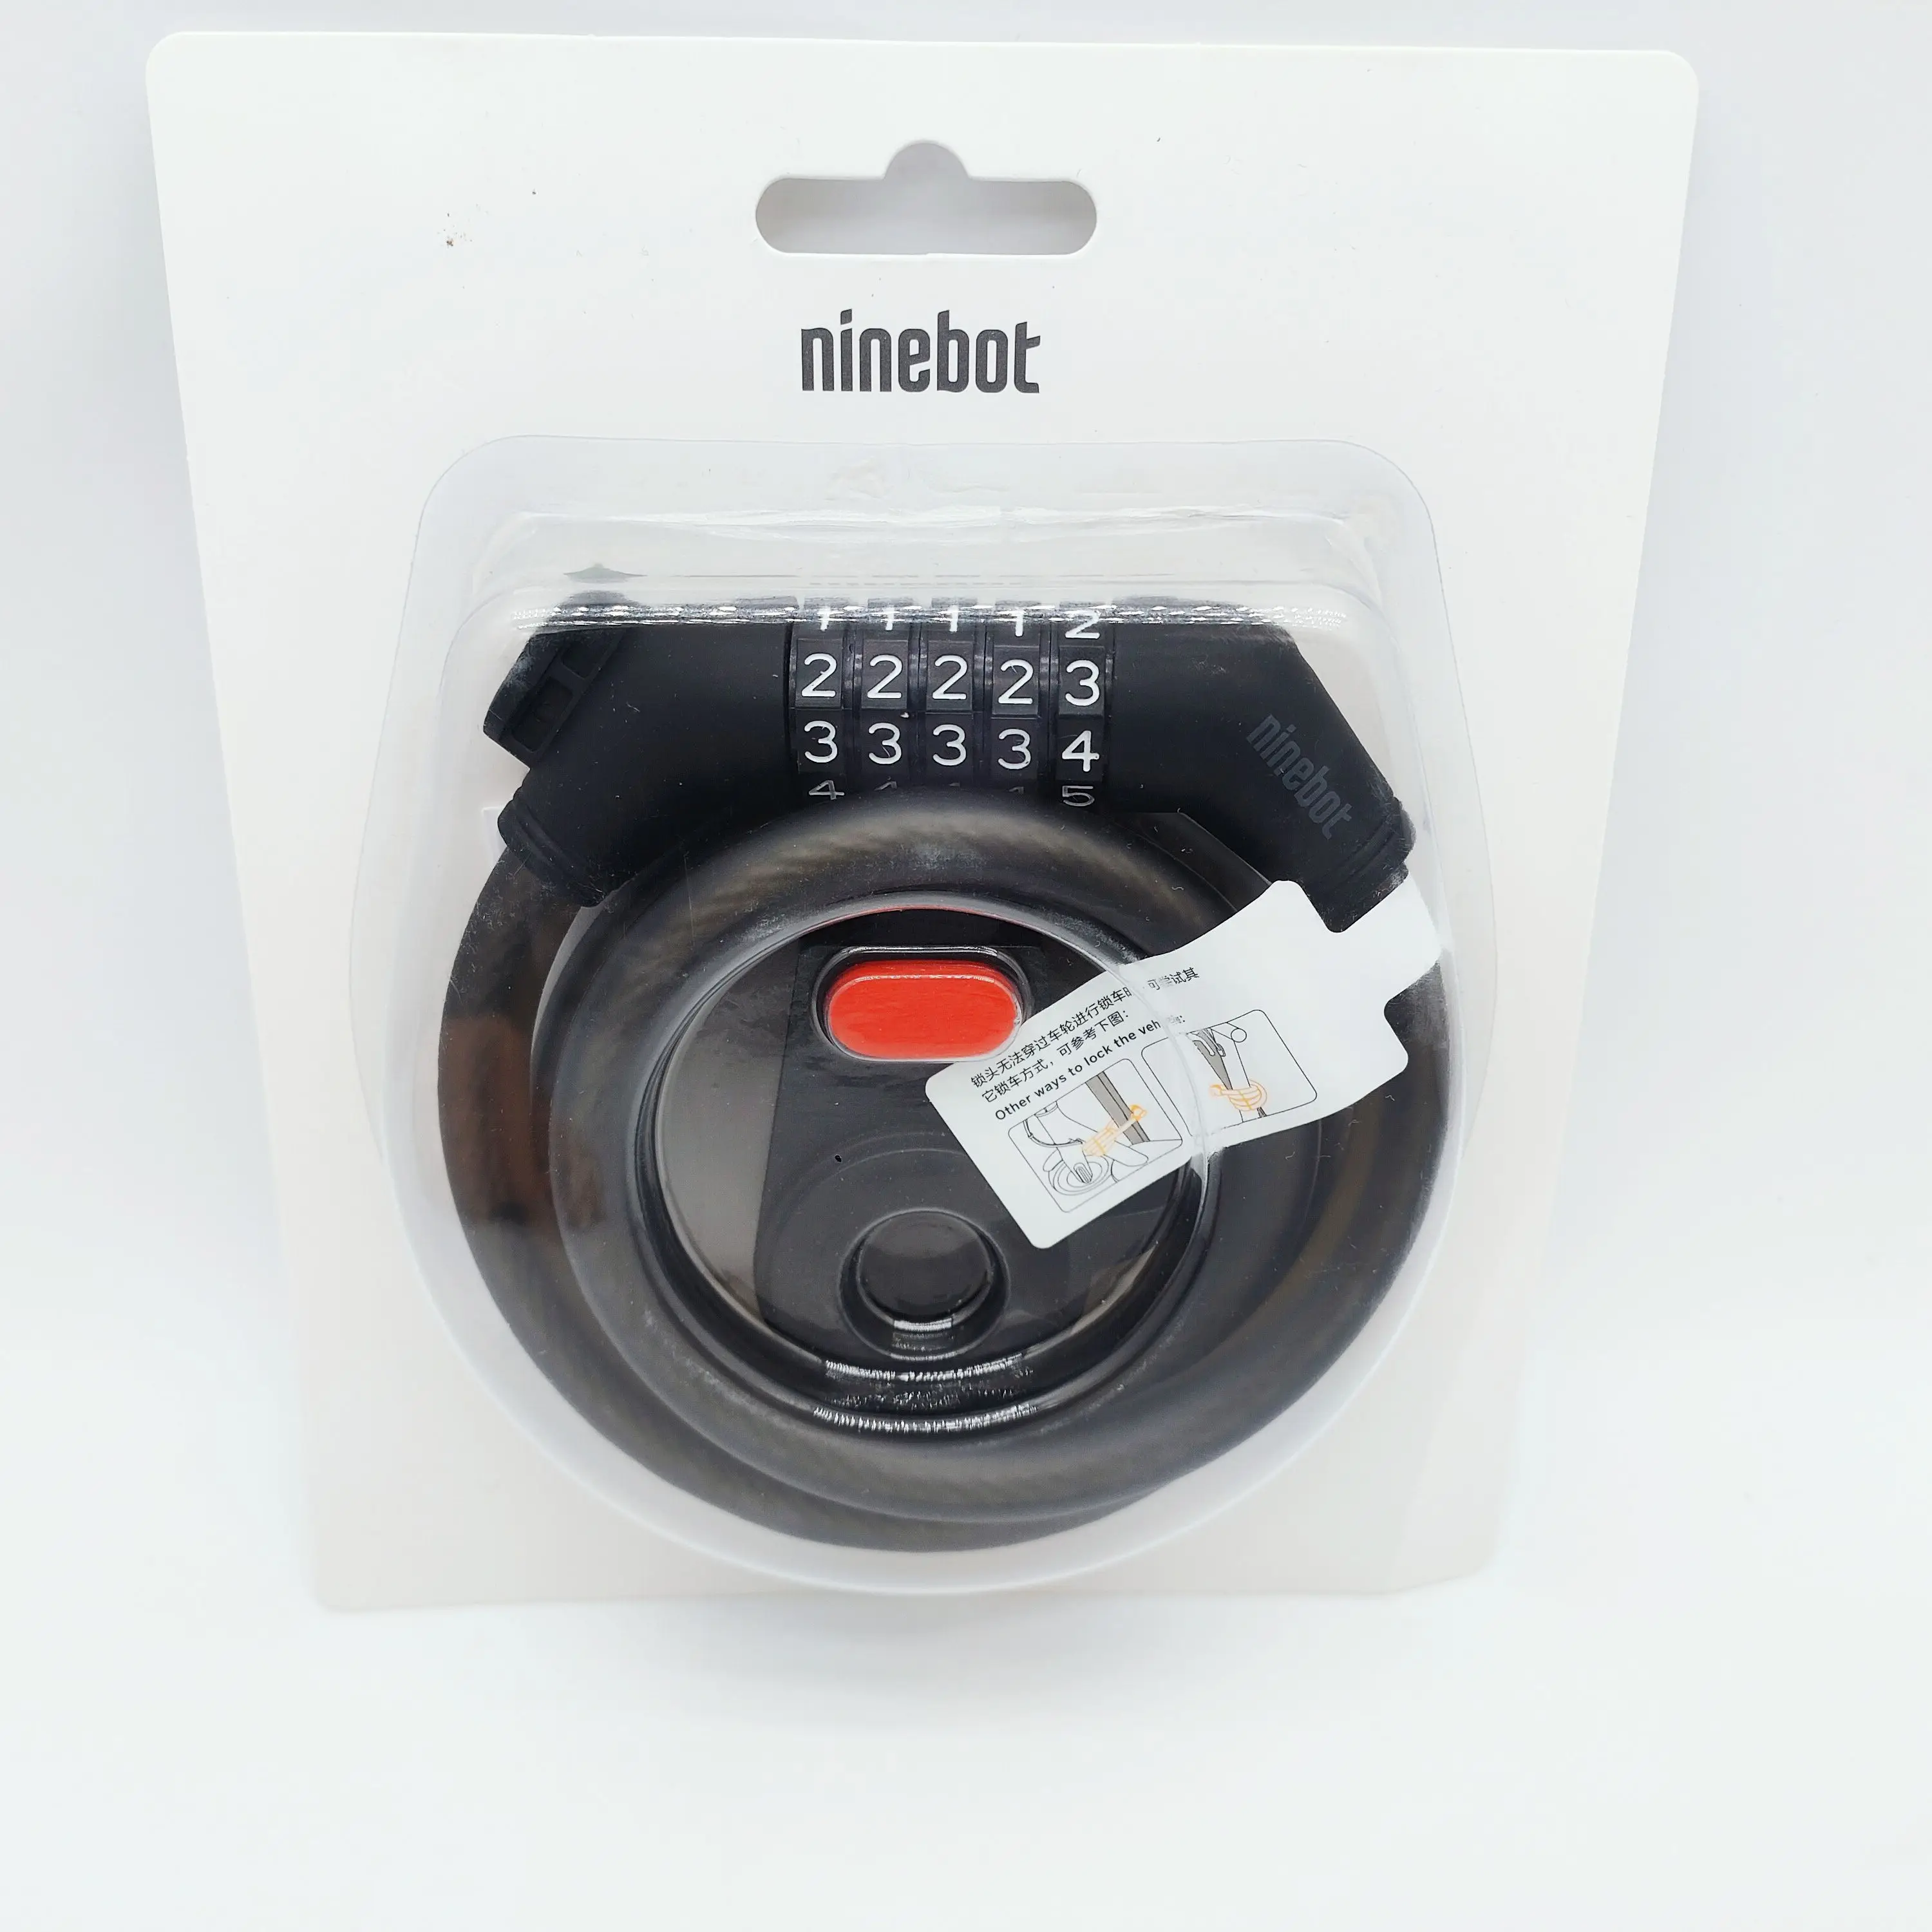 Ninebot-cerradura de seguridad antirrobo para patinete eléctrico